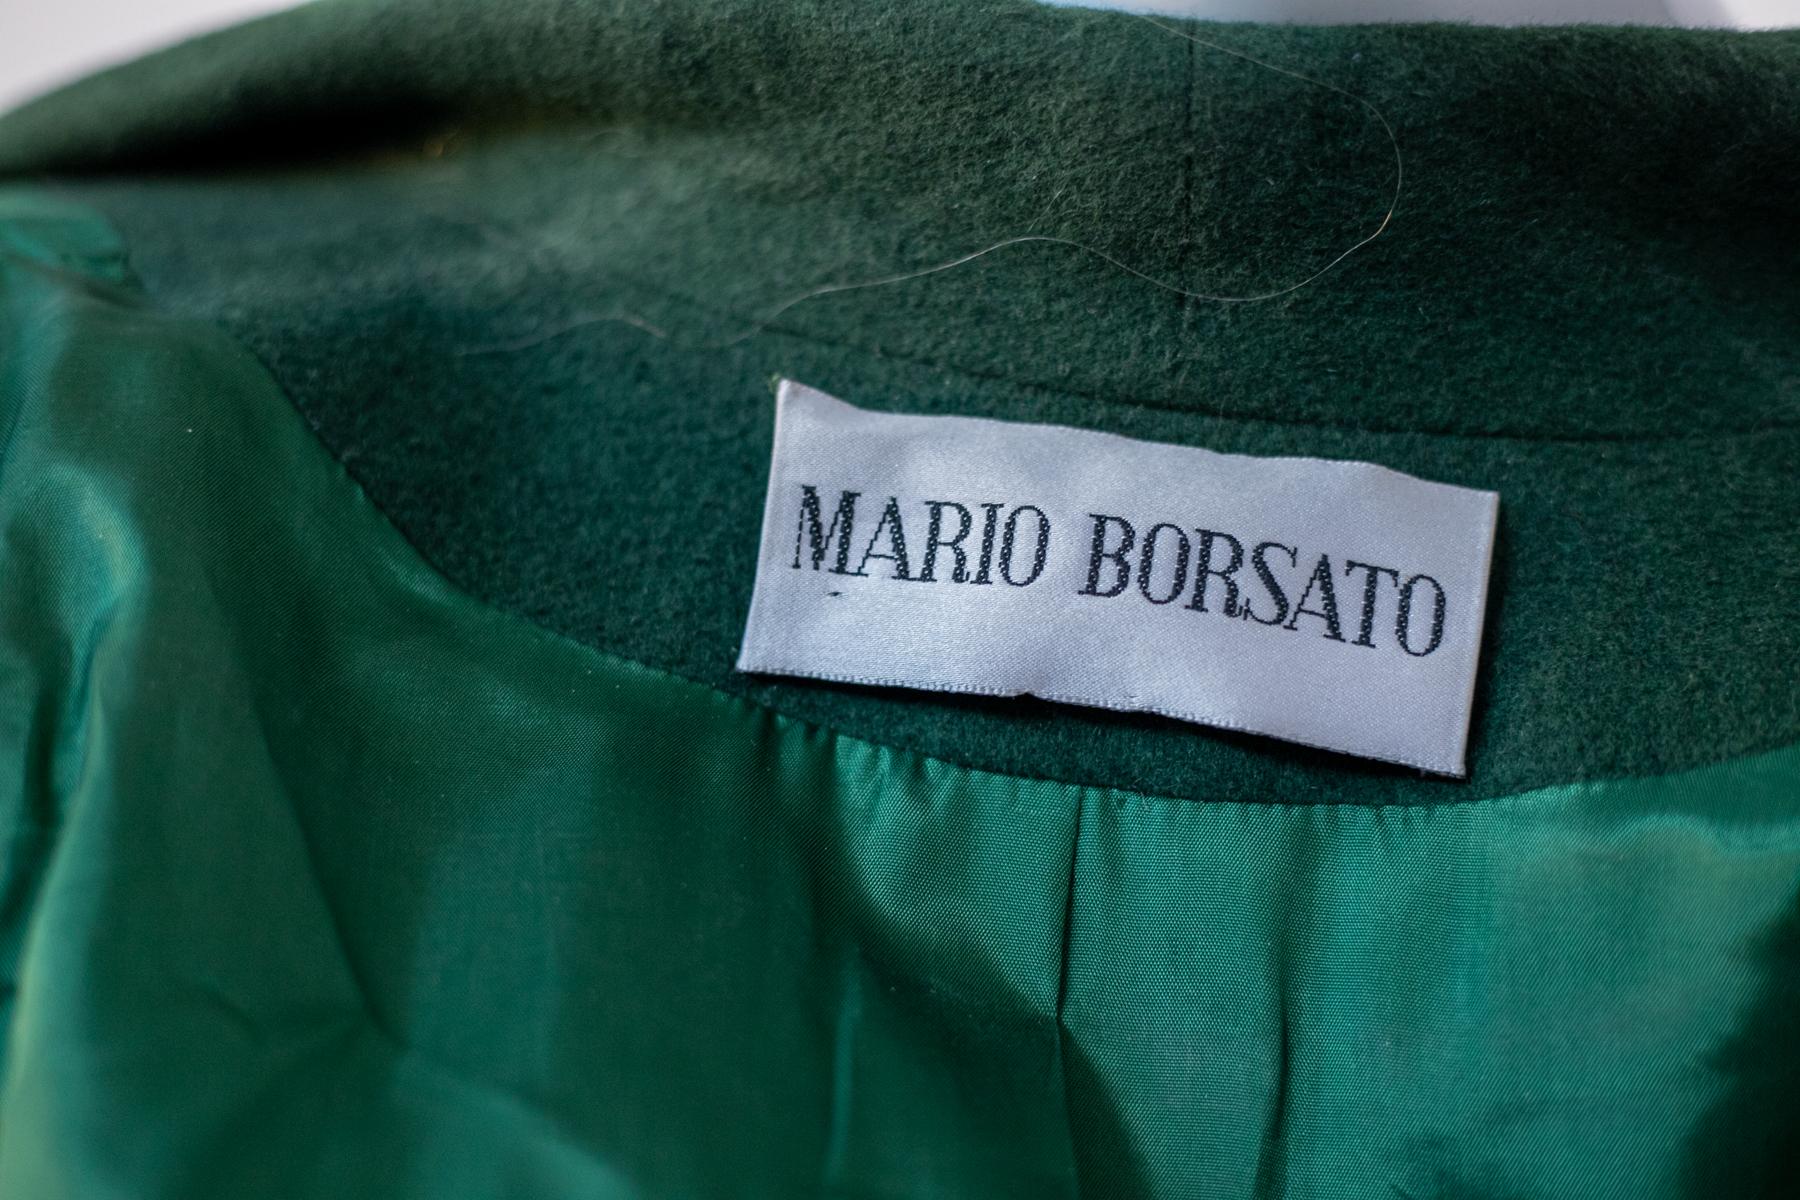 Besondere Vintage-Wolljacke aus den 1980er Jahren von Mario Borsato, hergestellt in Italien. ORIGINALETIKETT.
Die Jacke hat einen sehr tiefen Ausschnitt, mit dem klassischen Standard-Langschnitt, der sich an den mittleren Teil der Jacke anschließt,